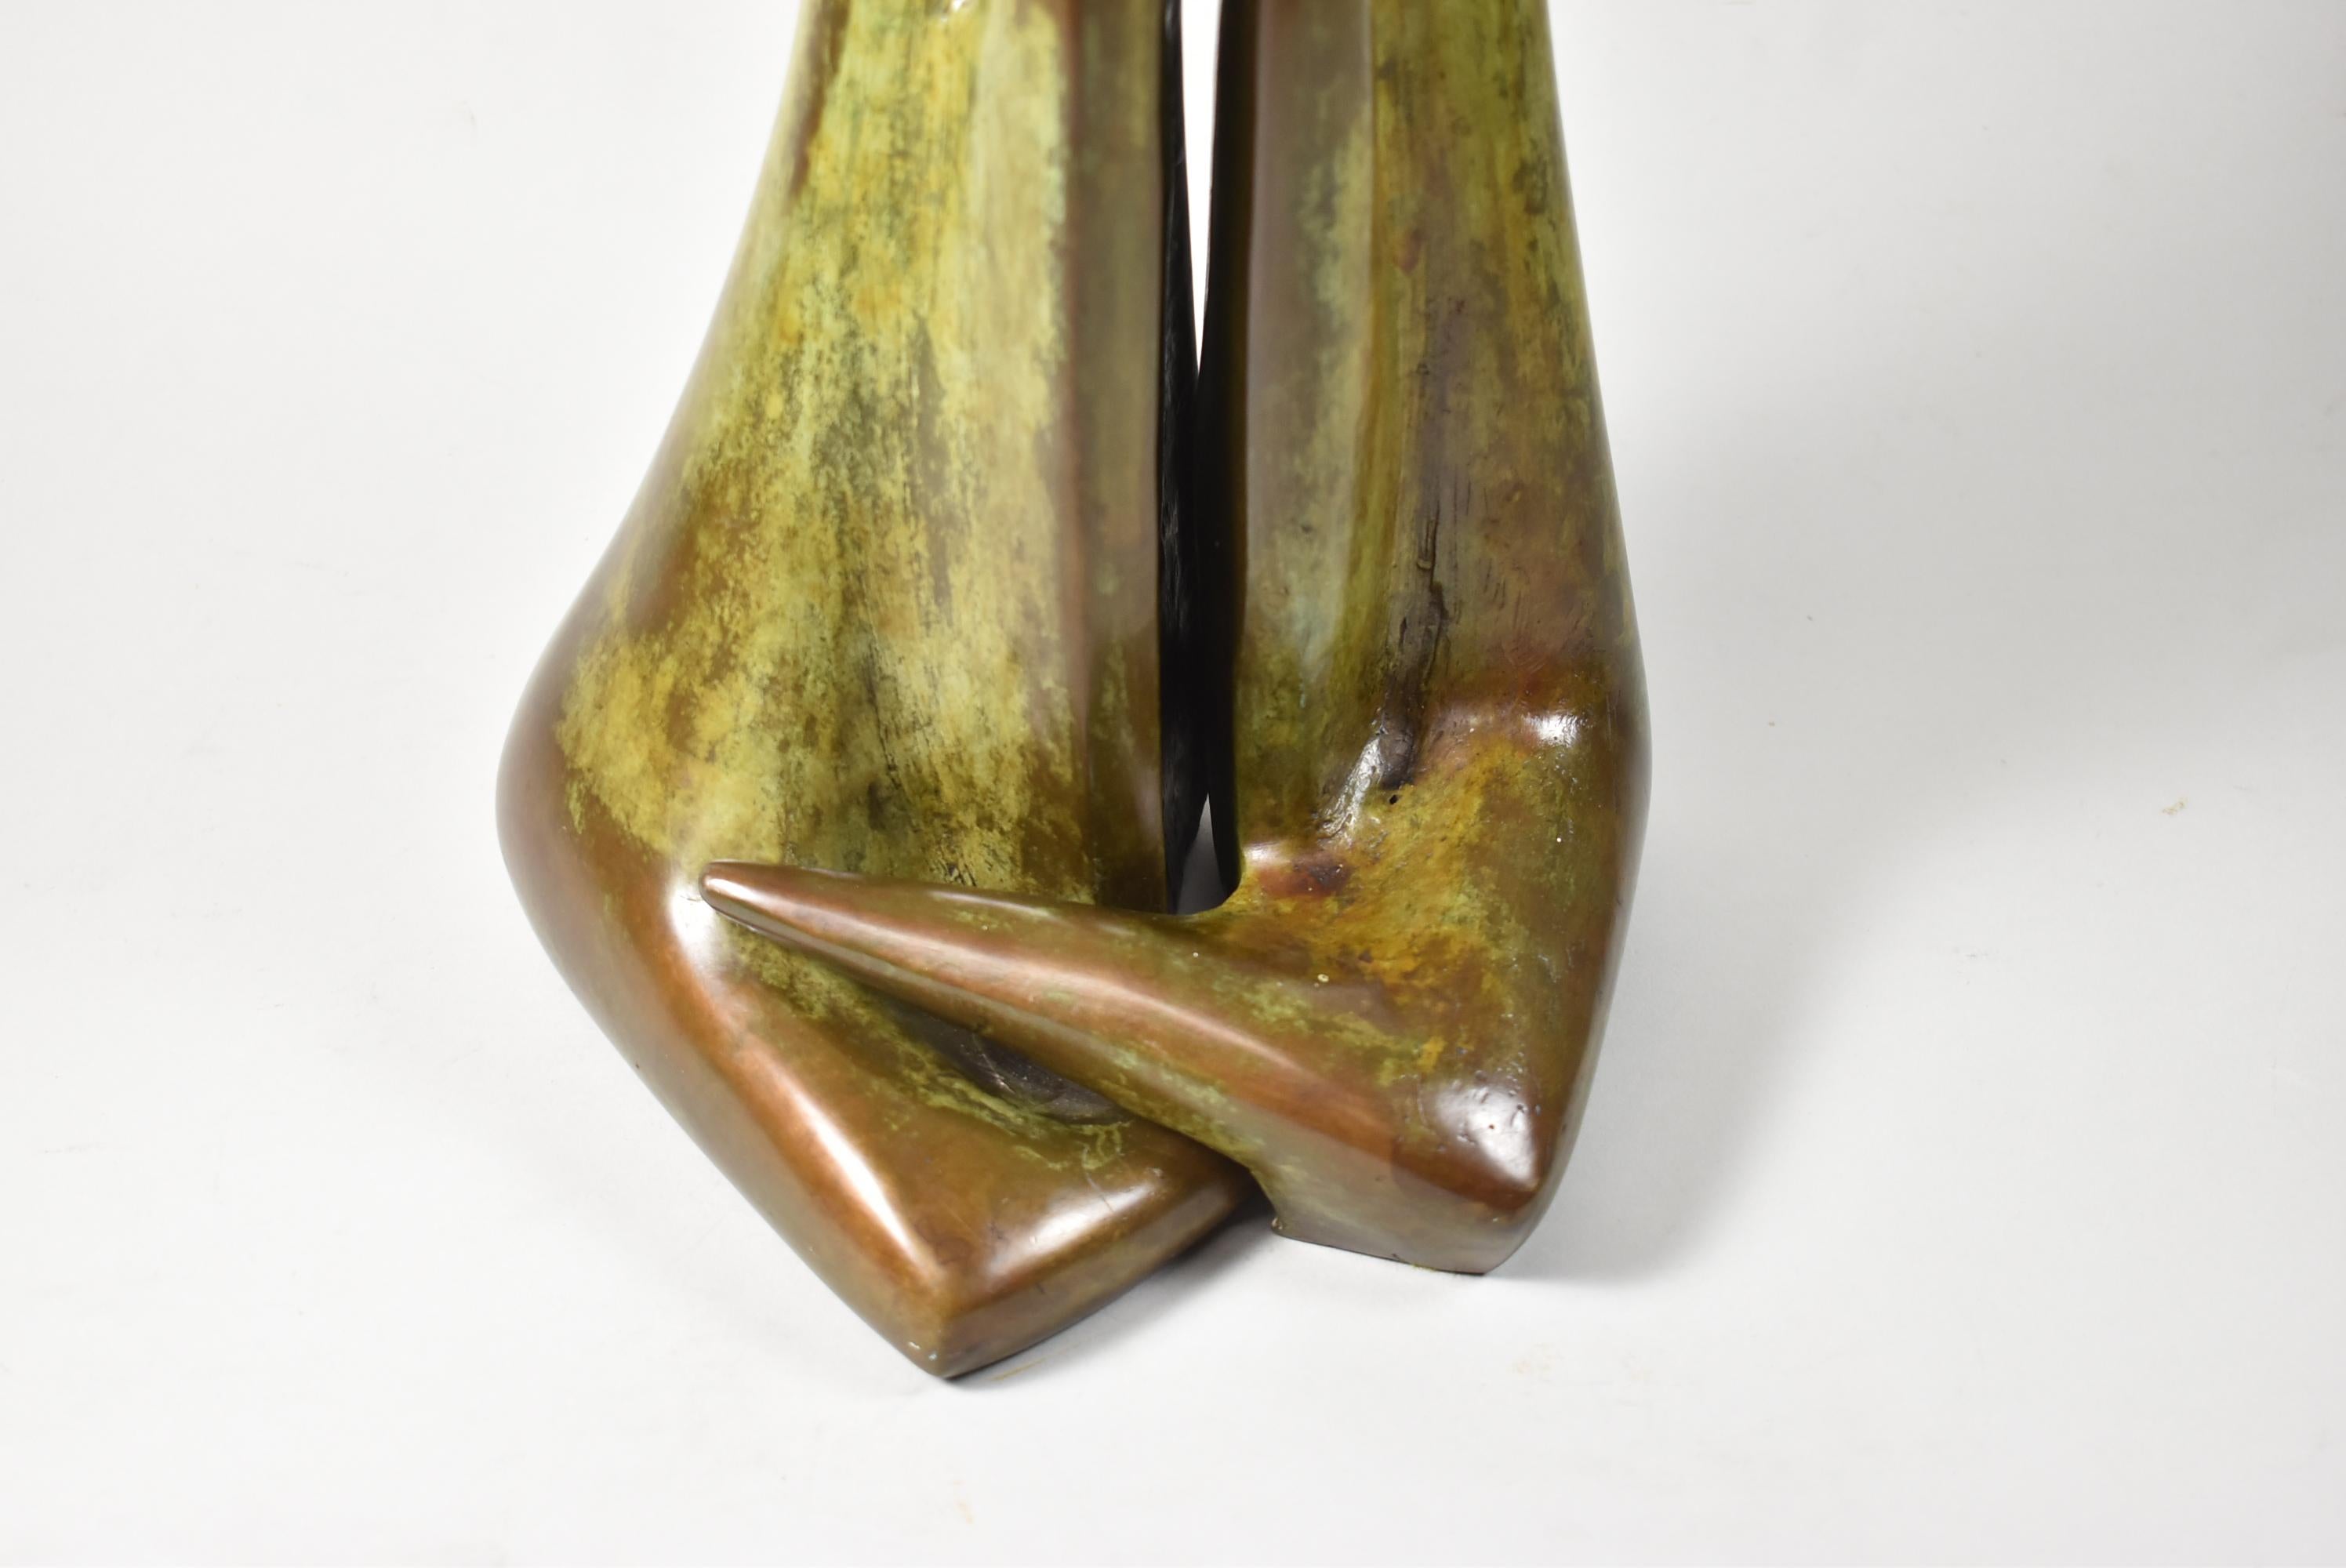 Diese surrealistische Bronze zeigt eine männliche und weibliche Figur, die ineinander verschlungen sind, und ist 24 Zoll groß. Die Bronze hat eine schöne braune und grüne Patina. Die Skulptur besteht, wie abgebildet, aus zwei Teilen. Signiert und